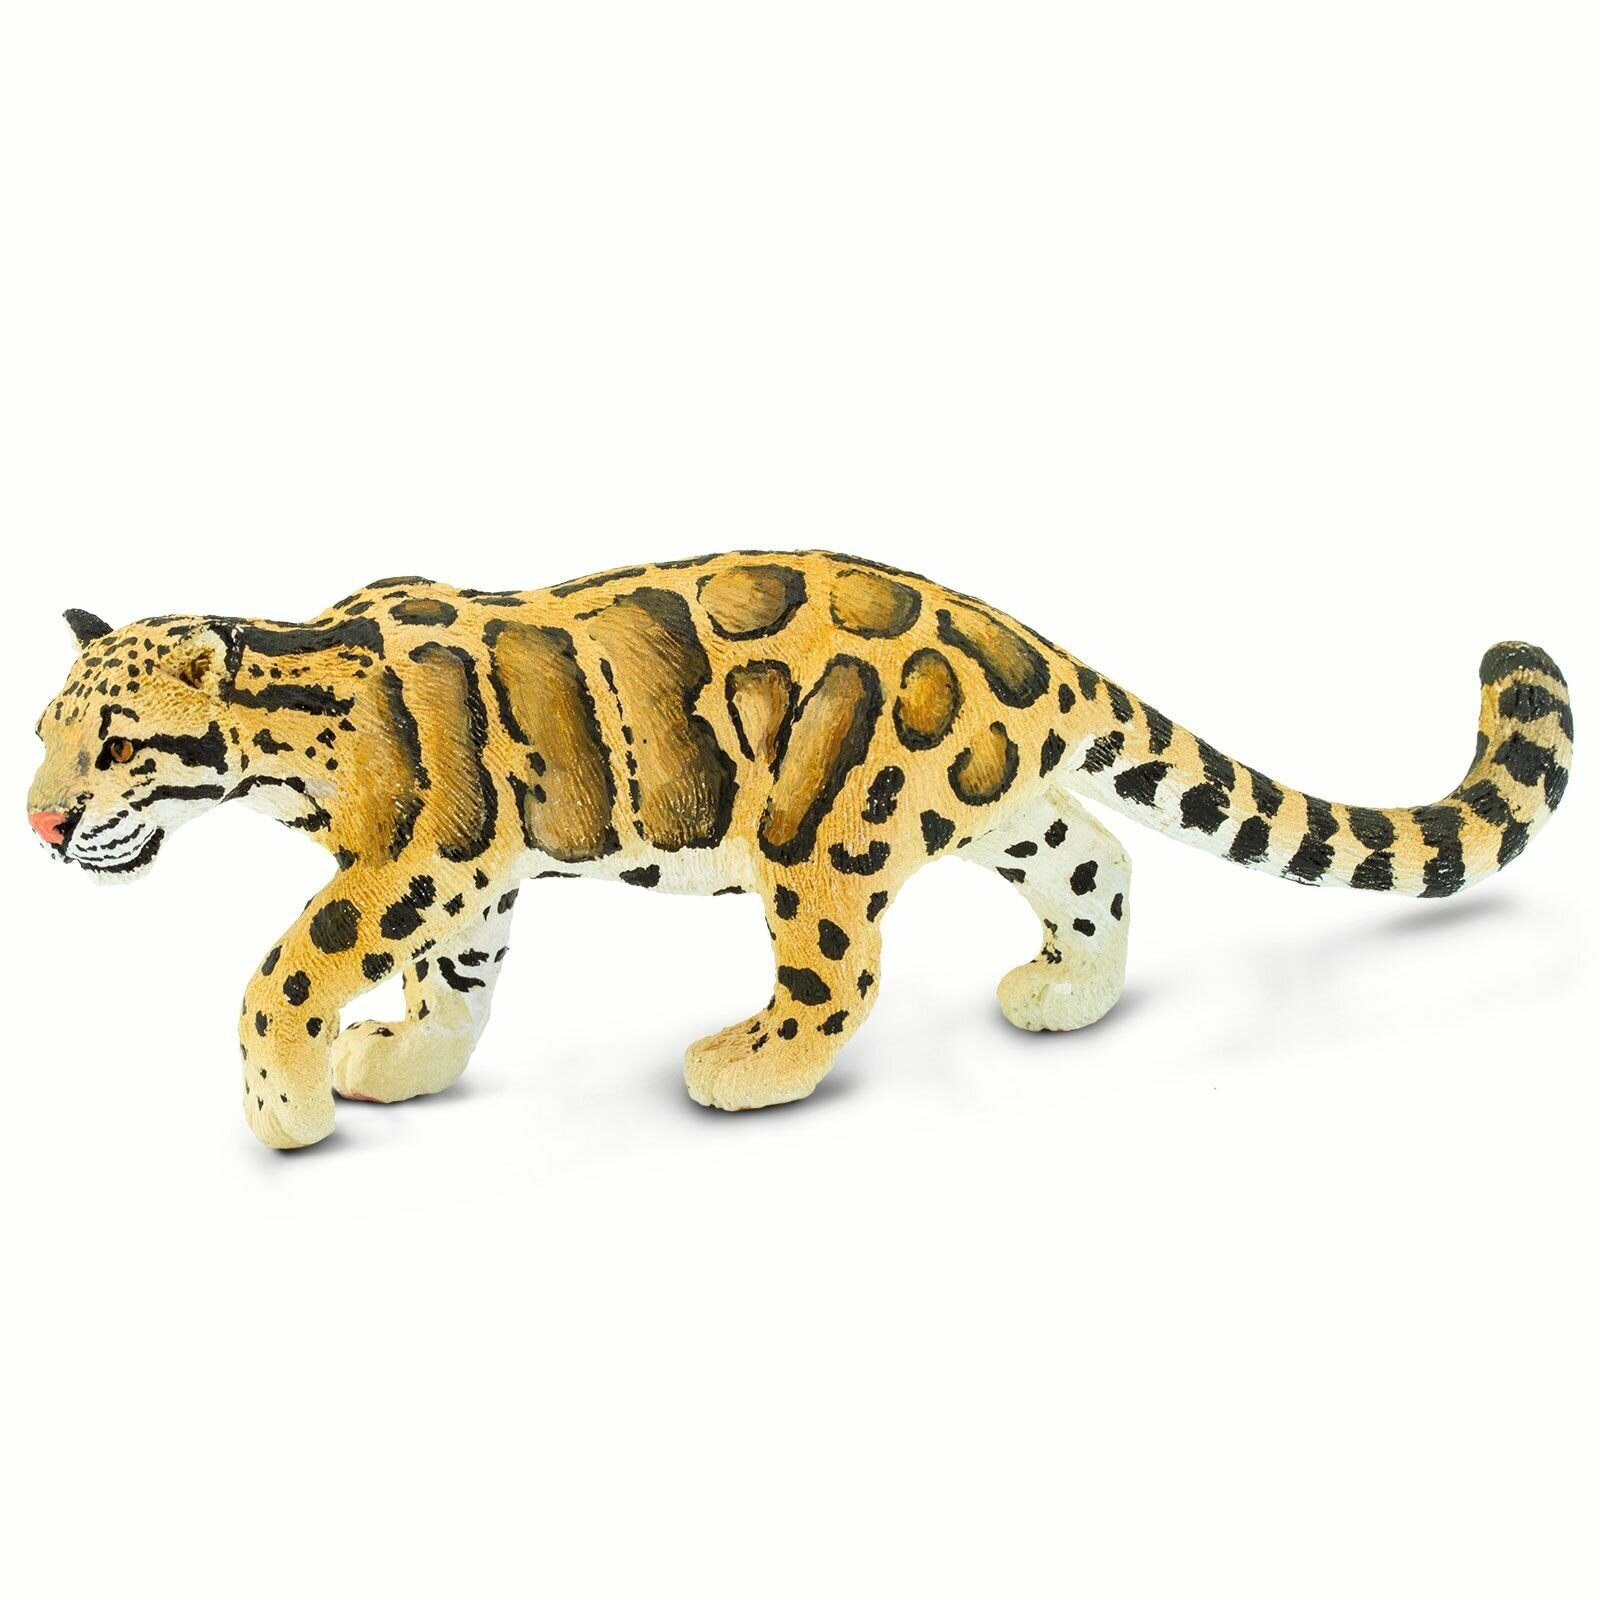 Фигурка животного Safari Ltd Дымчатый леопард, для детей, игрушка коллекционная, 100239